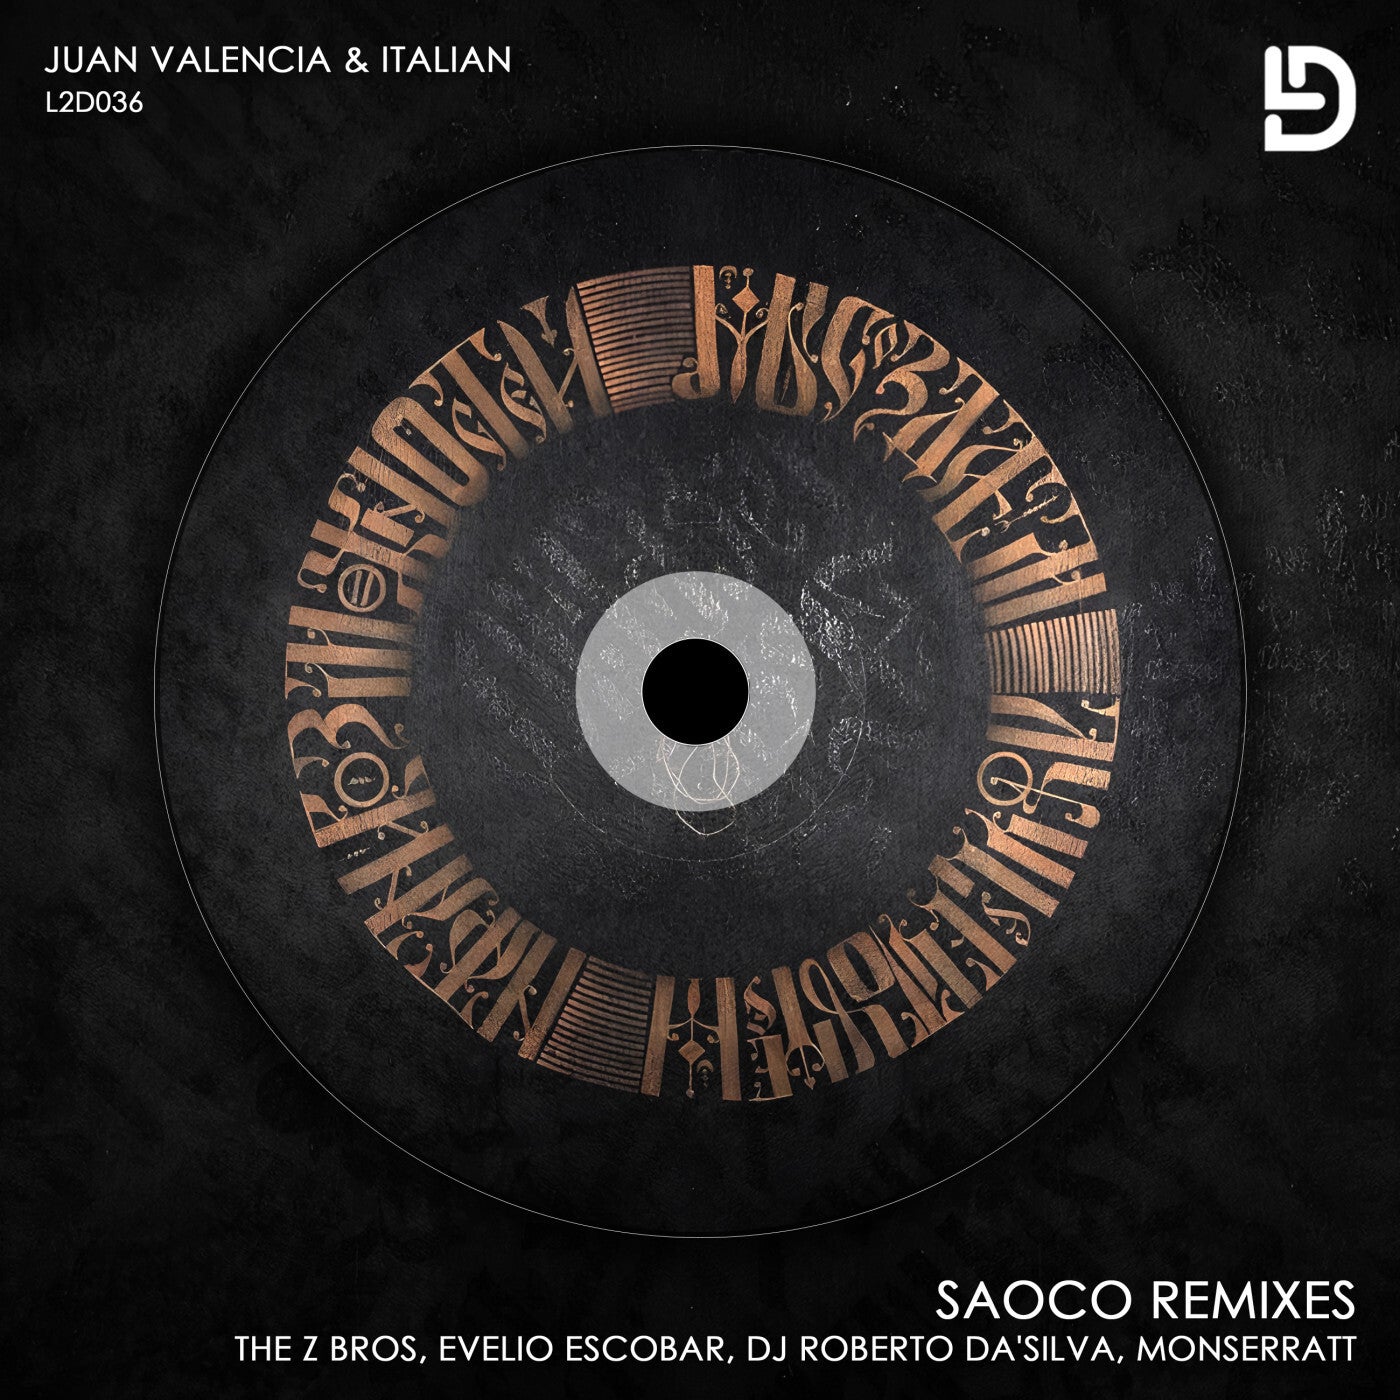 Saoco Remixes